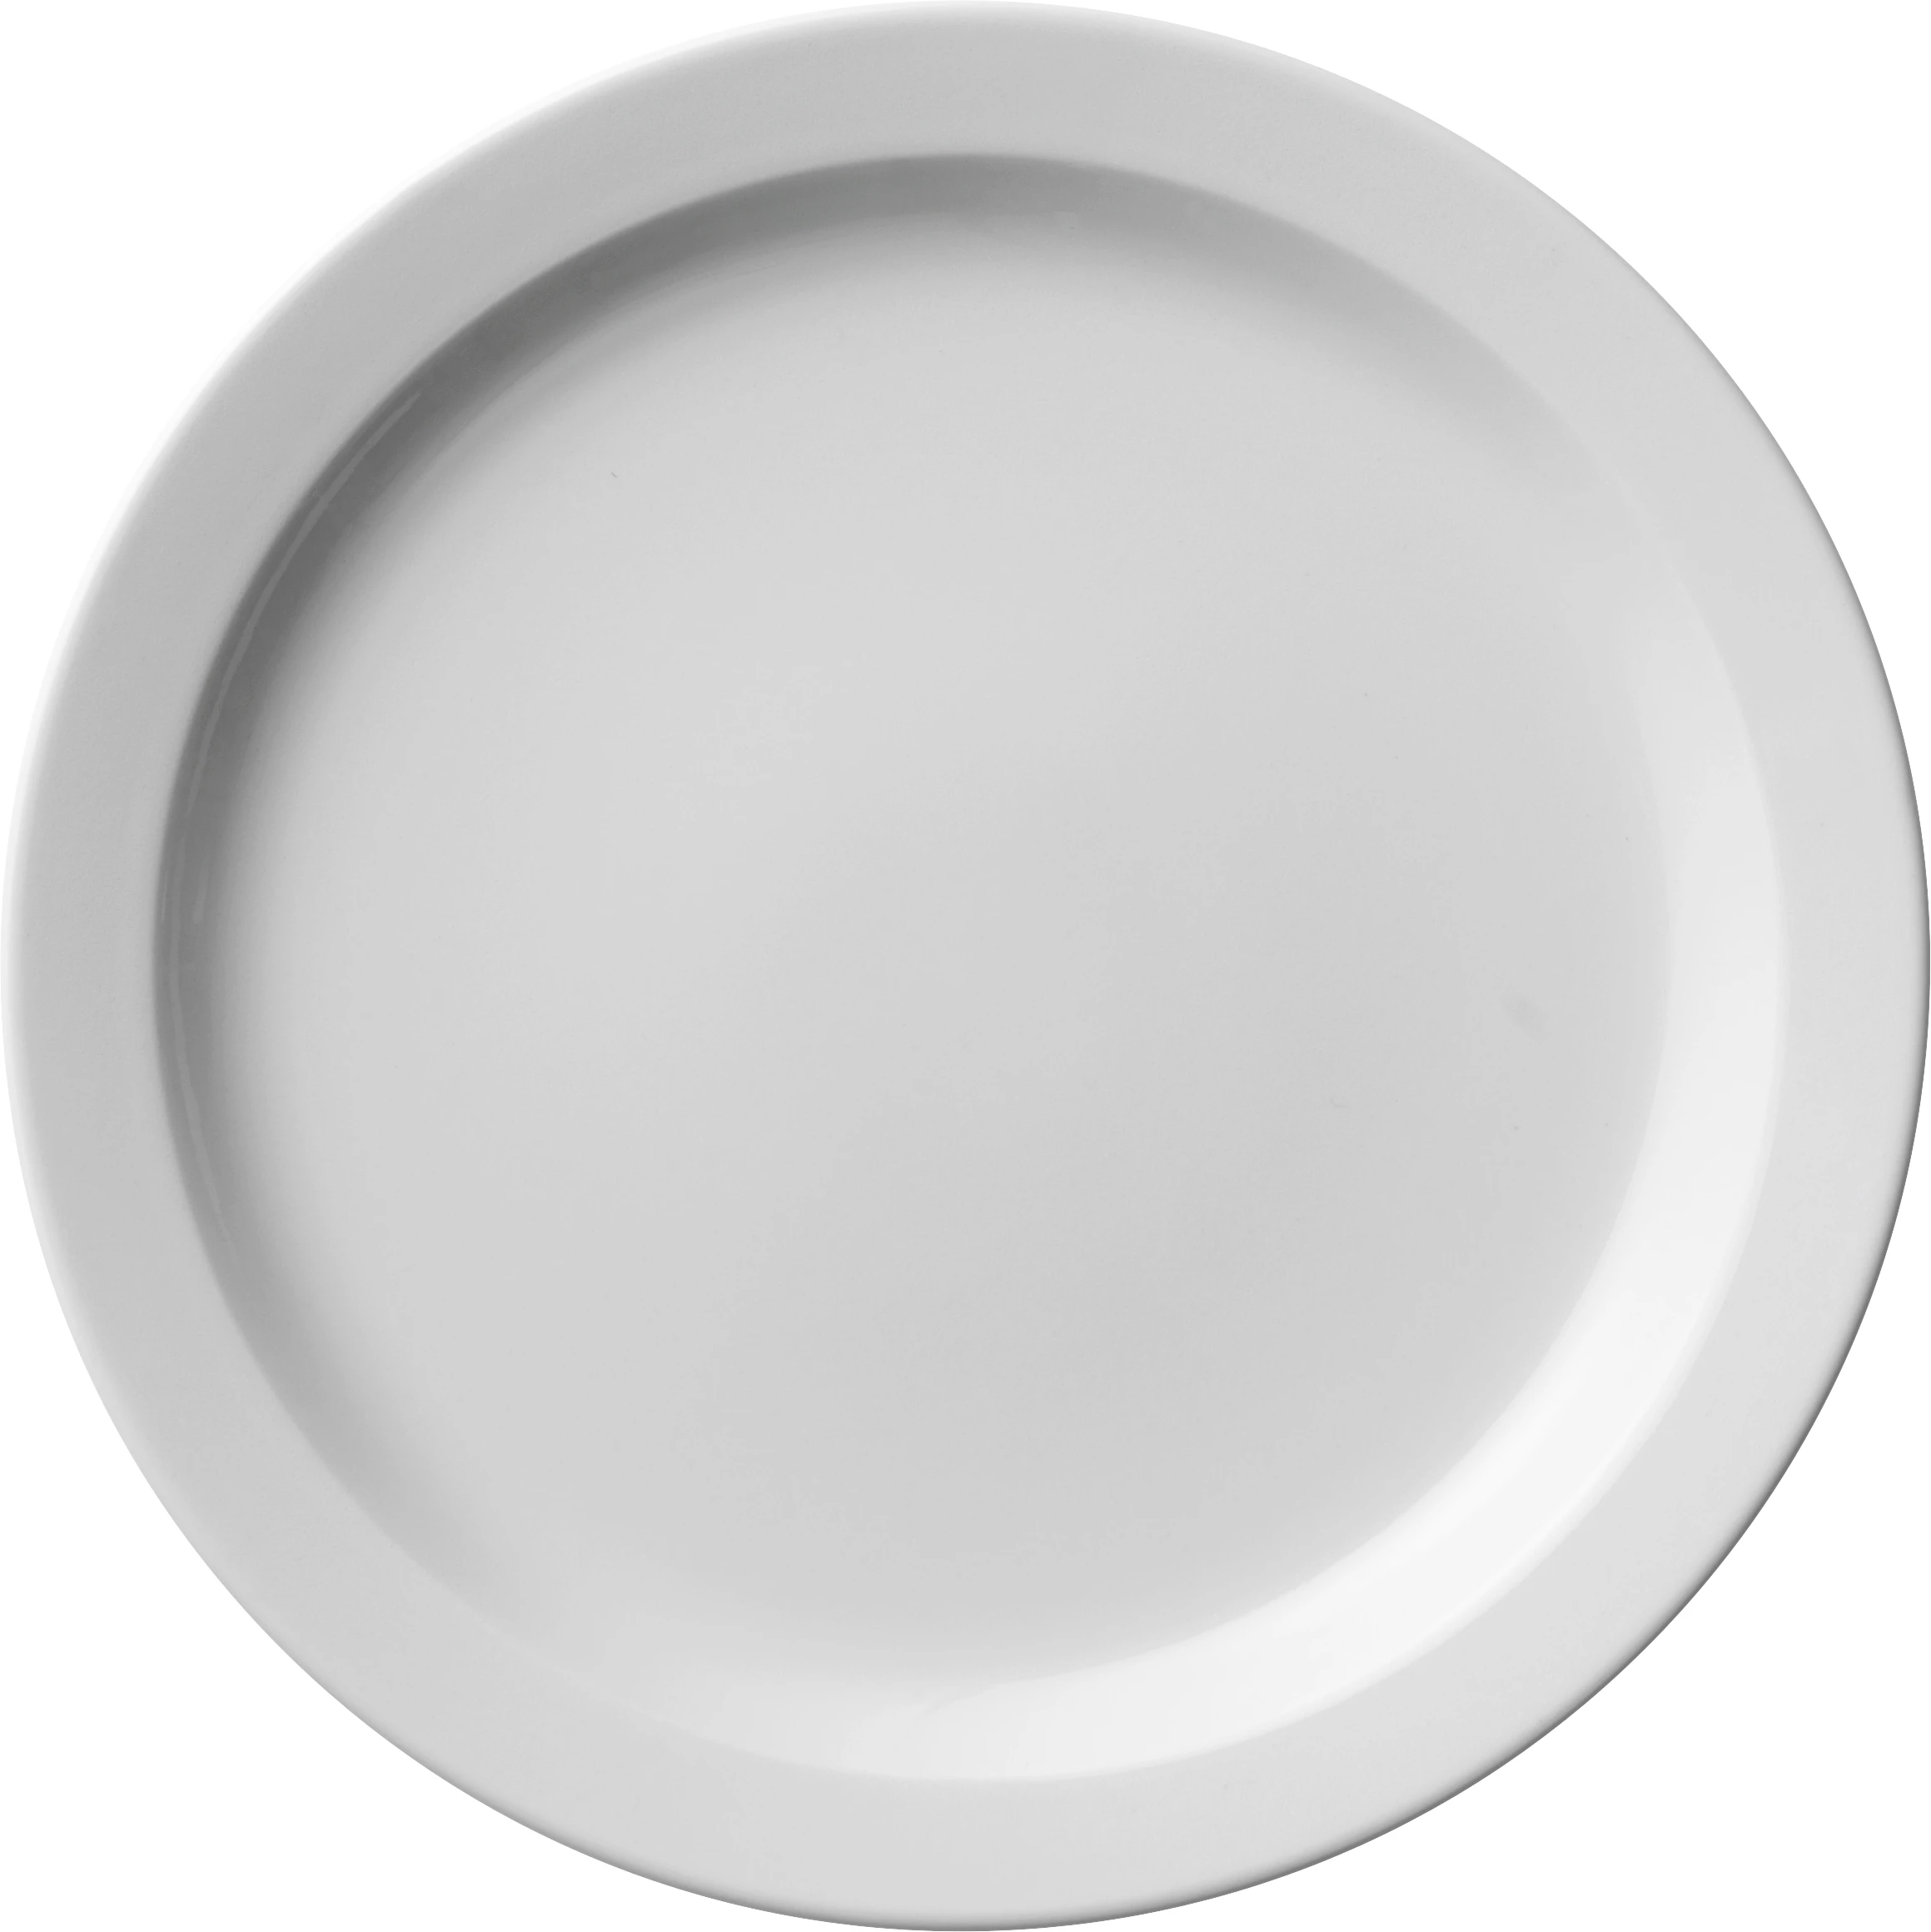 Figgjo Hvid flad tallerken med smal fane, ø24 cm